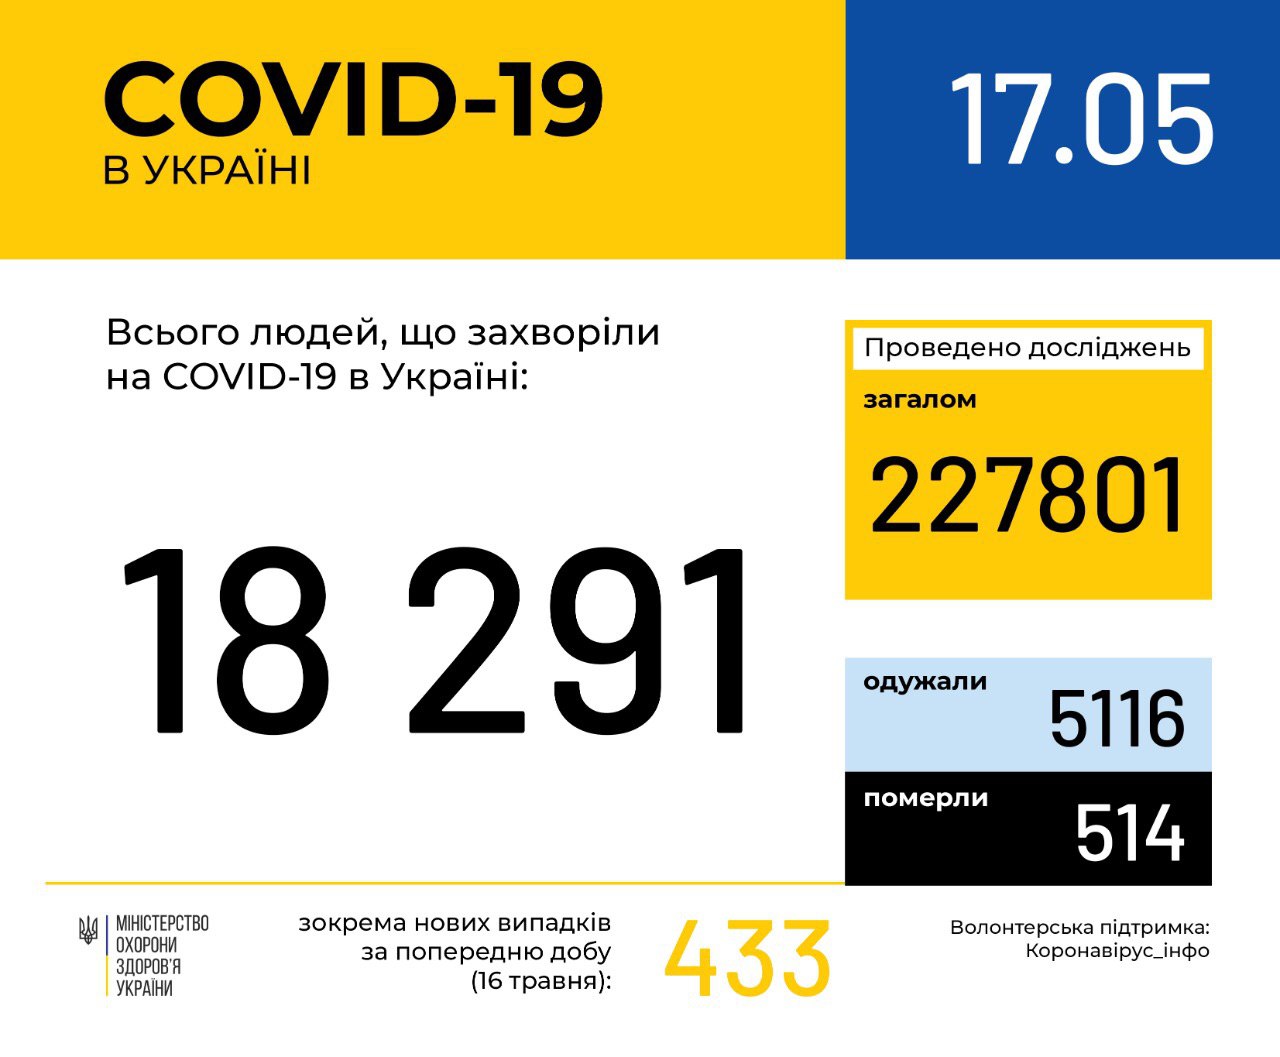 В Україні зафіксовано 18291 випадків коронавірусної хвороби COVID-19, – МОЗ